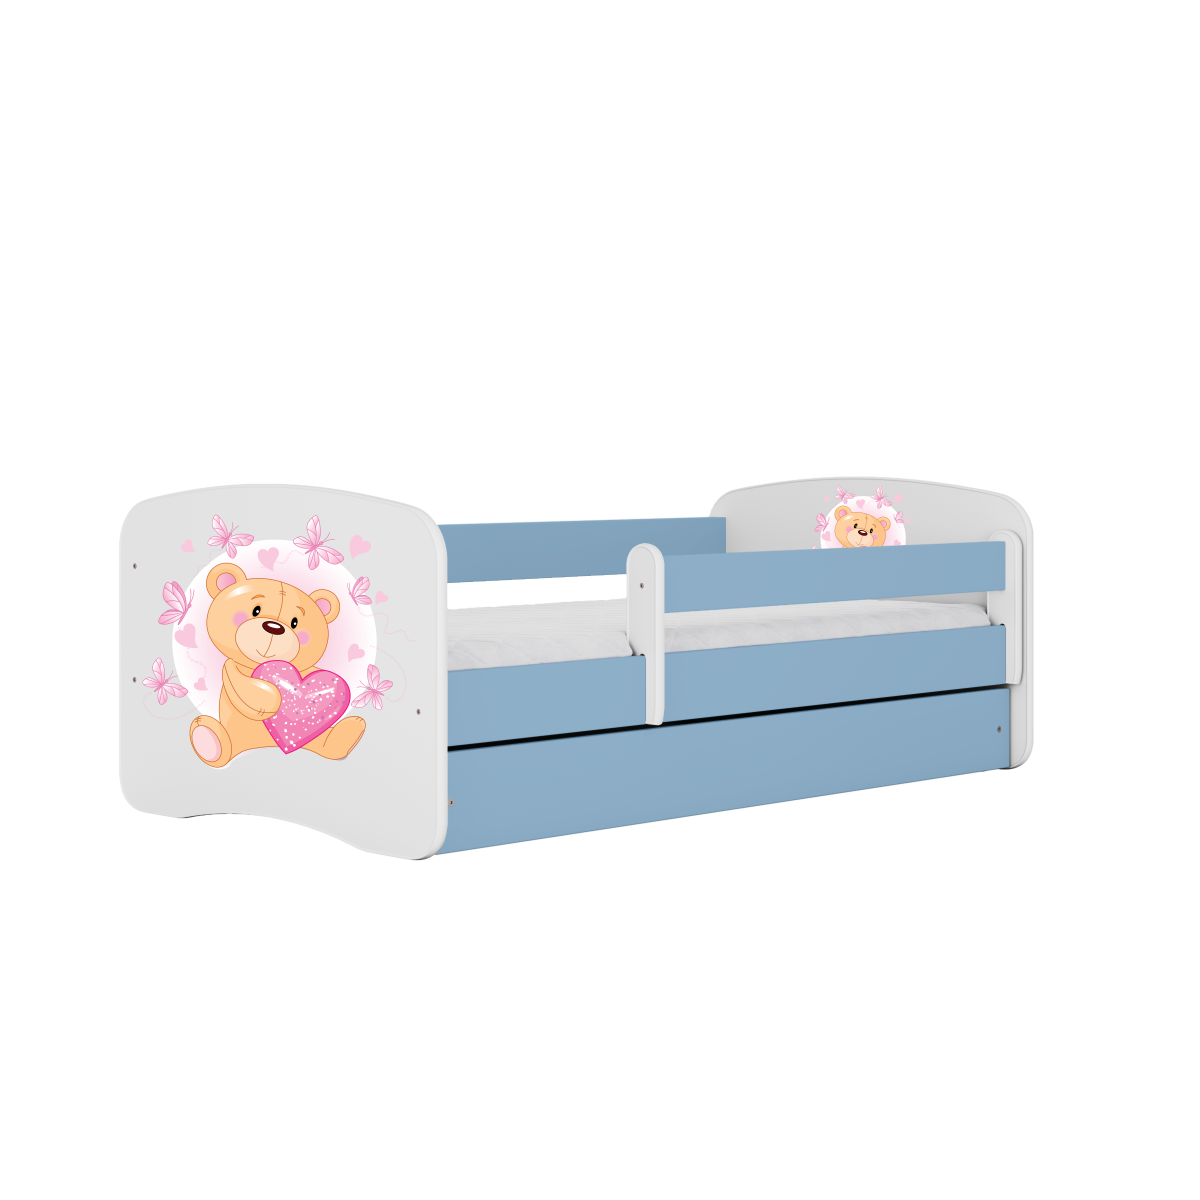 Detská posteľ Babydreams medvedík s motýlikmi modrá